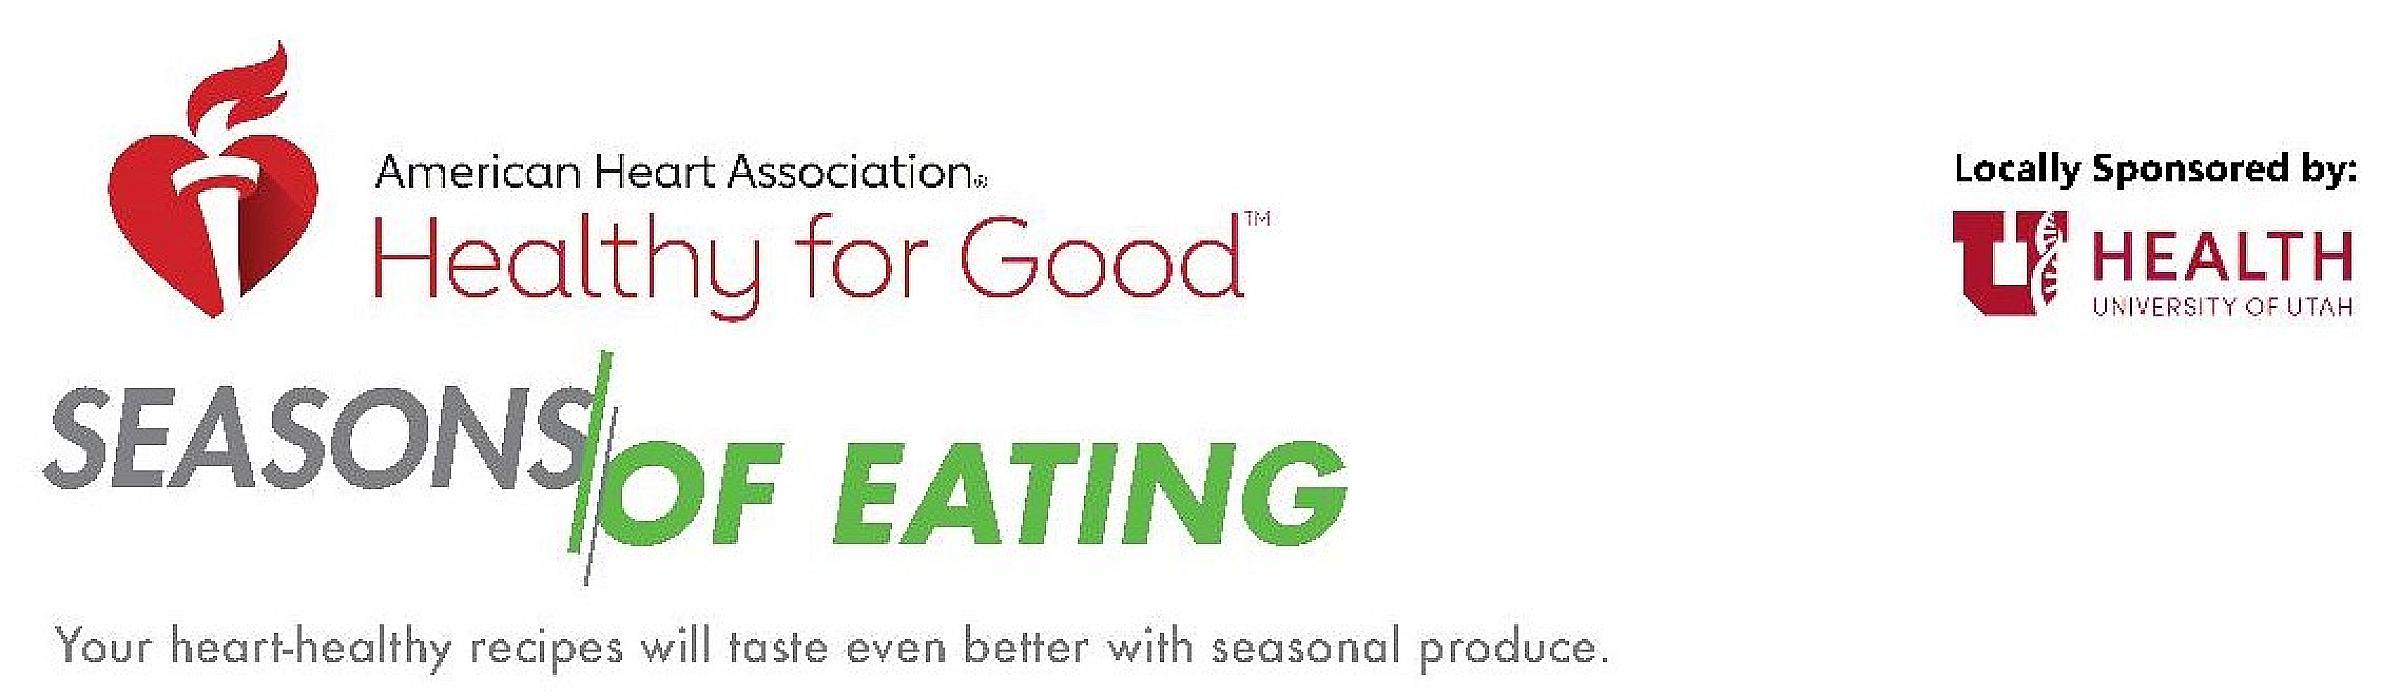 Seasons of eating banner